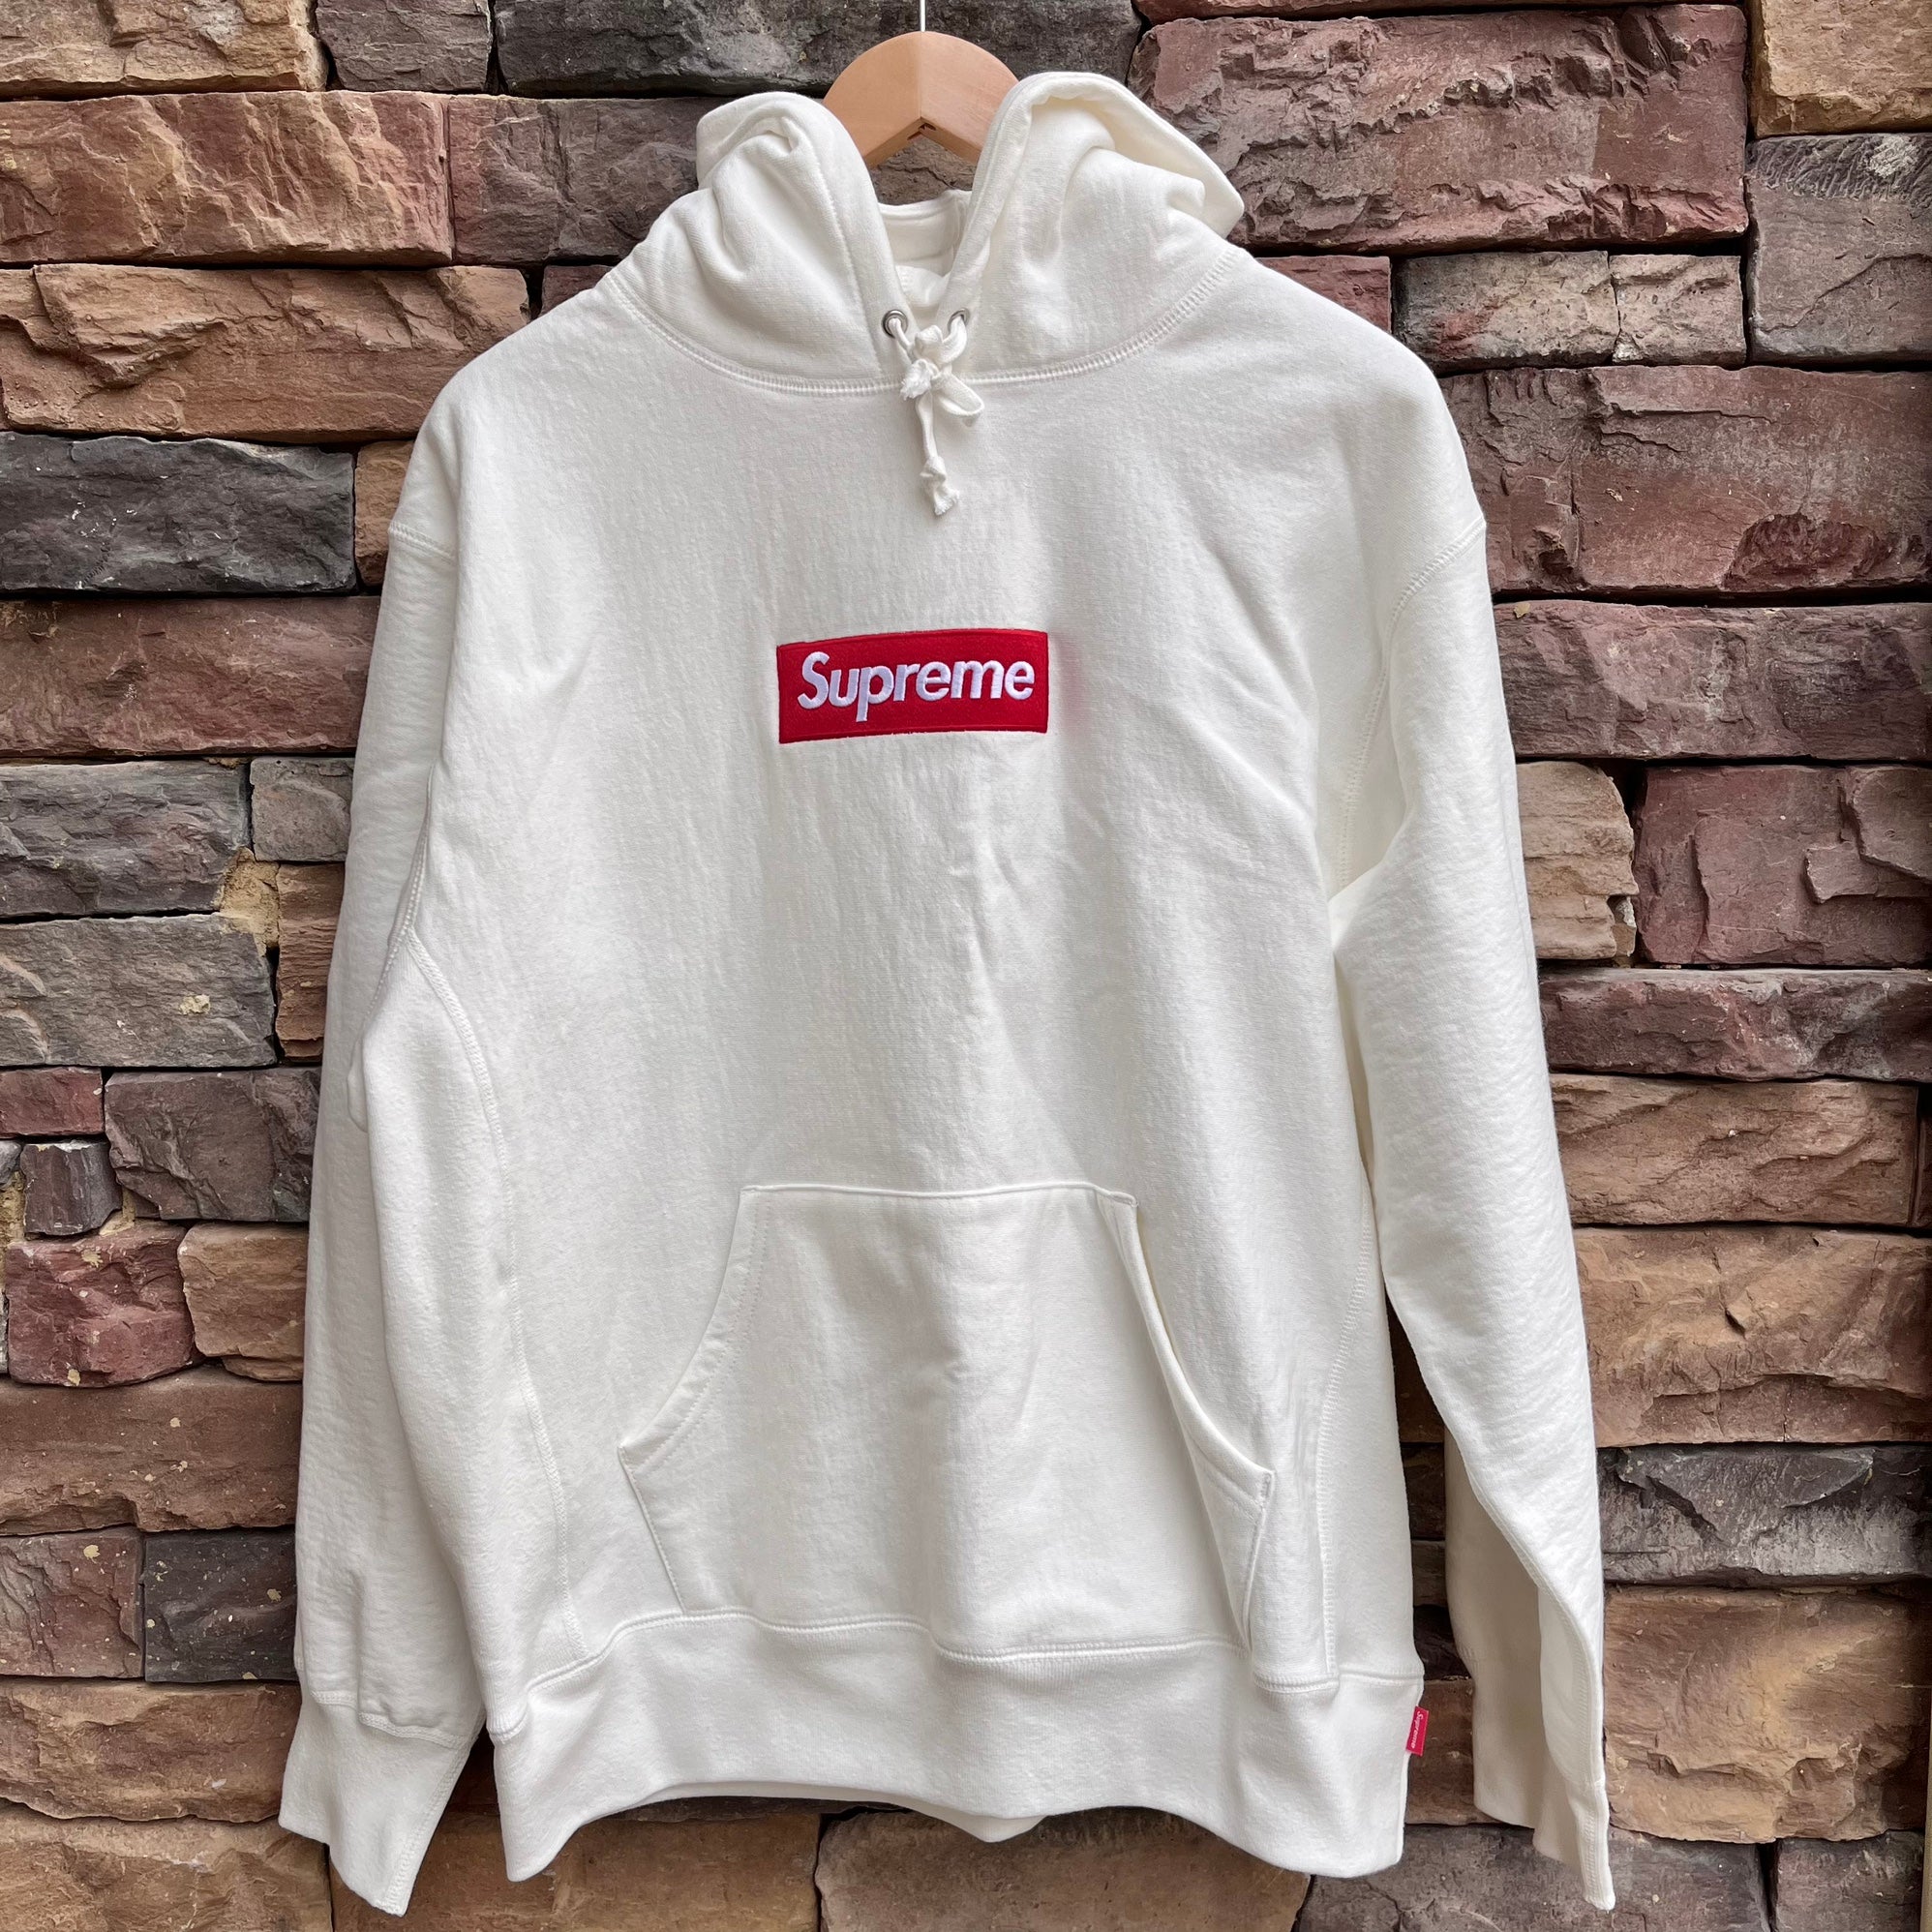 Supreme side logo hooded sweatshirt